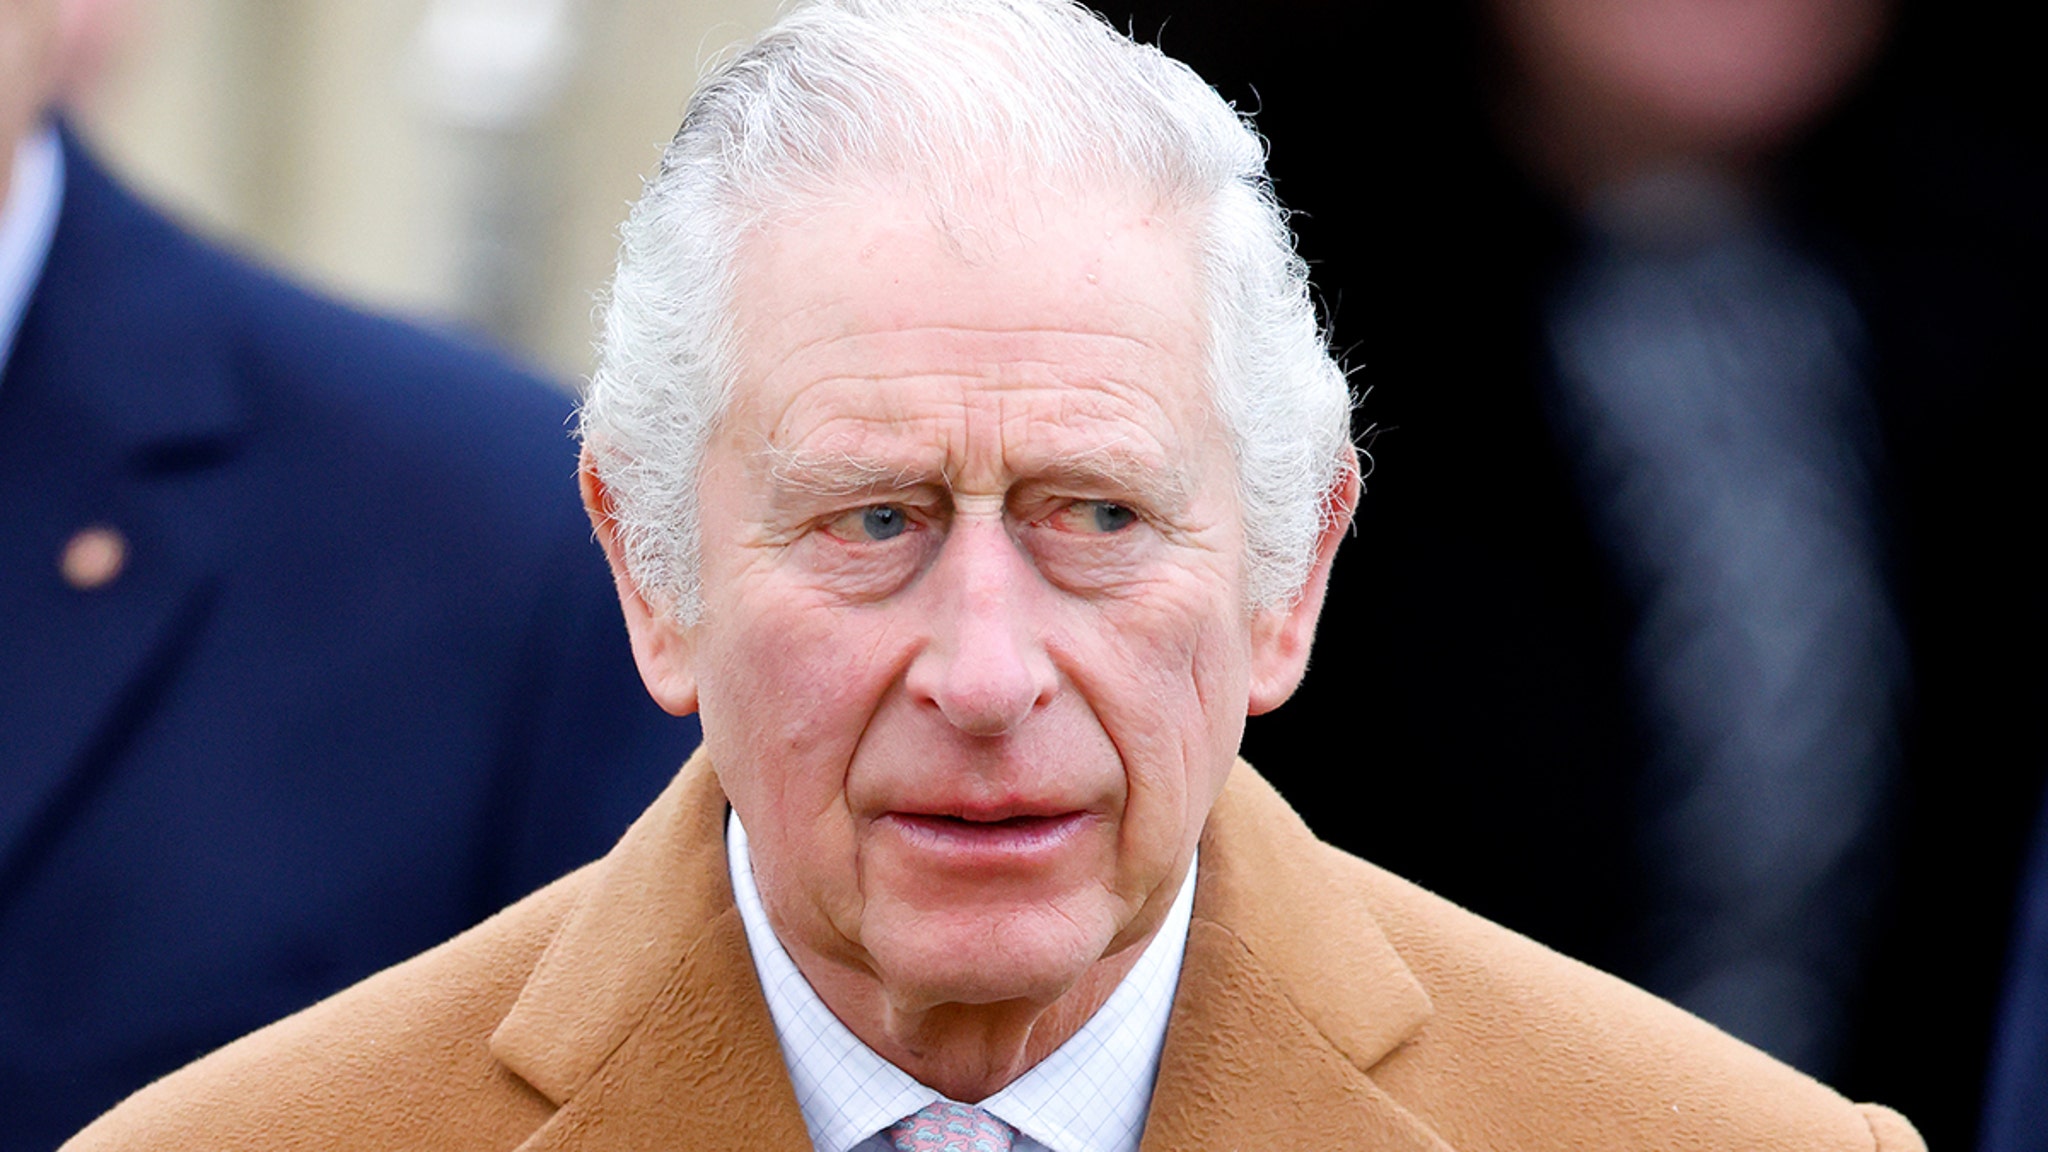 De begrafenisplannen van koning Charles worden naar verluidt bijgewerkt vanwege zijn strijd tegen kanker